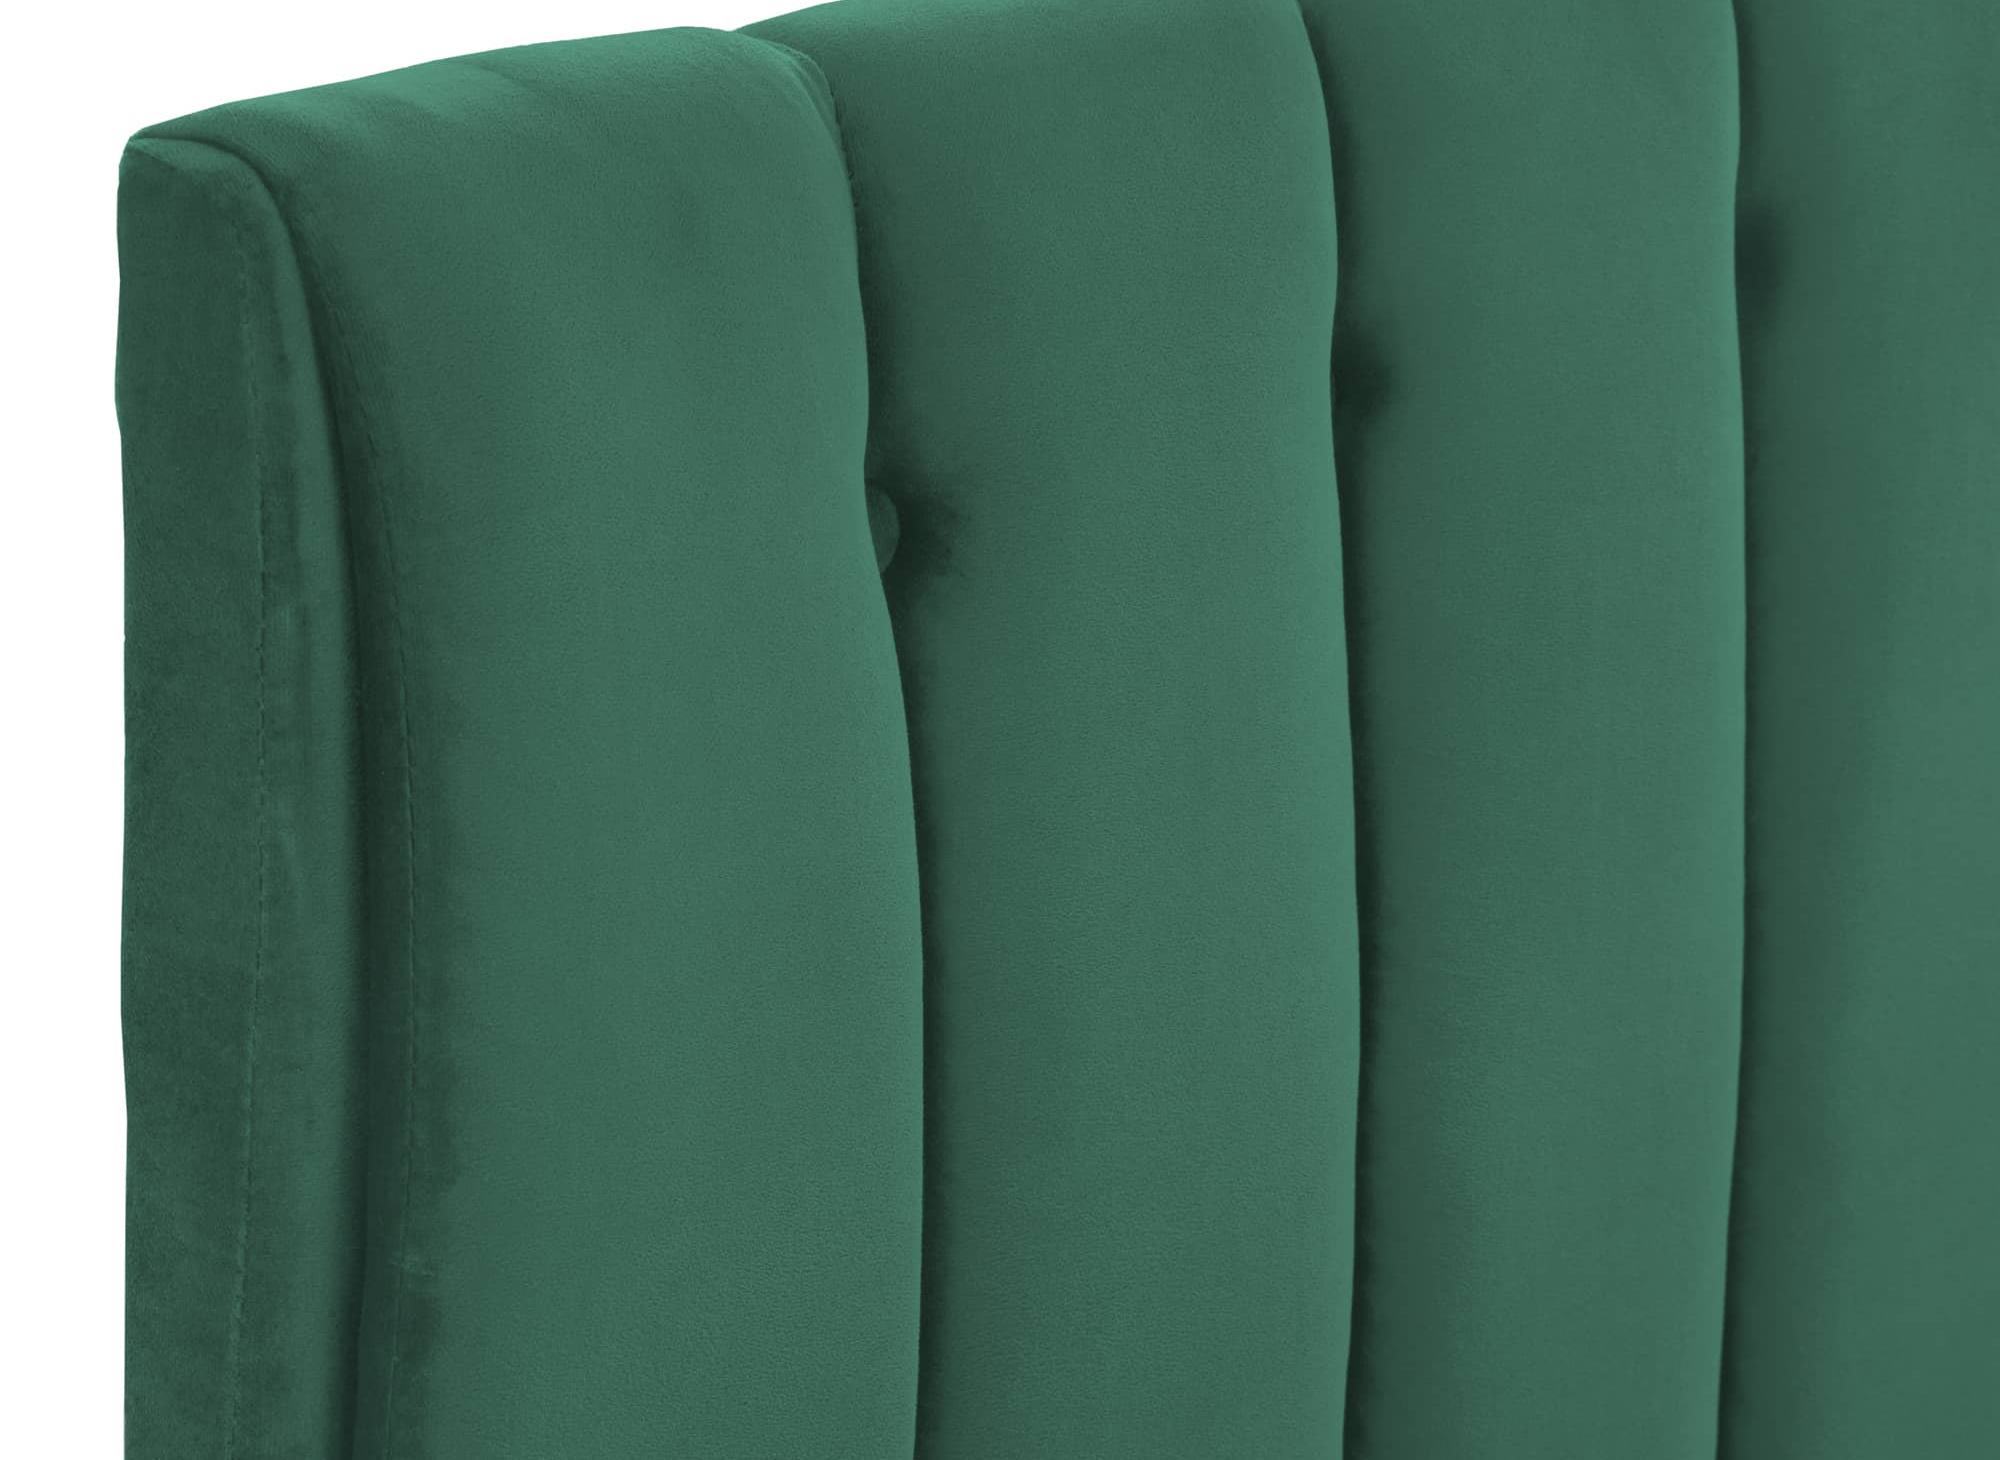 Lit double capitonné en tissu velours vert VALENTINE 140x190 cm